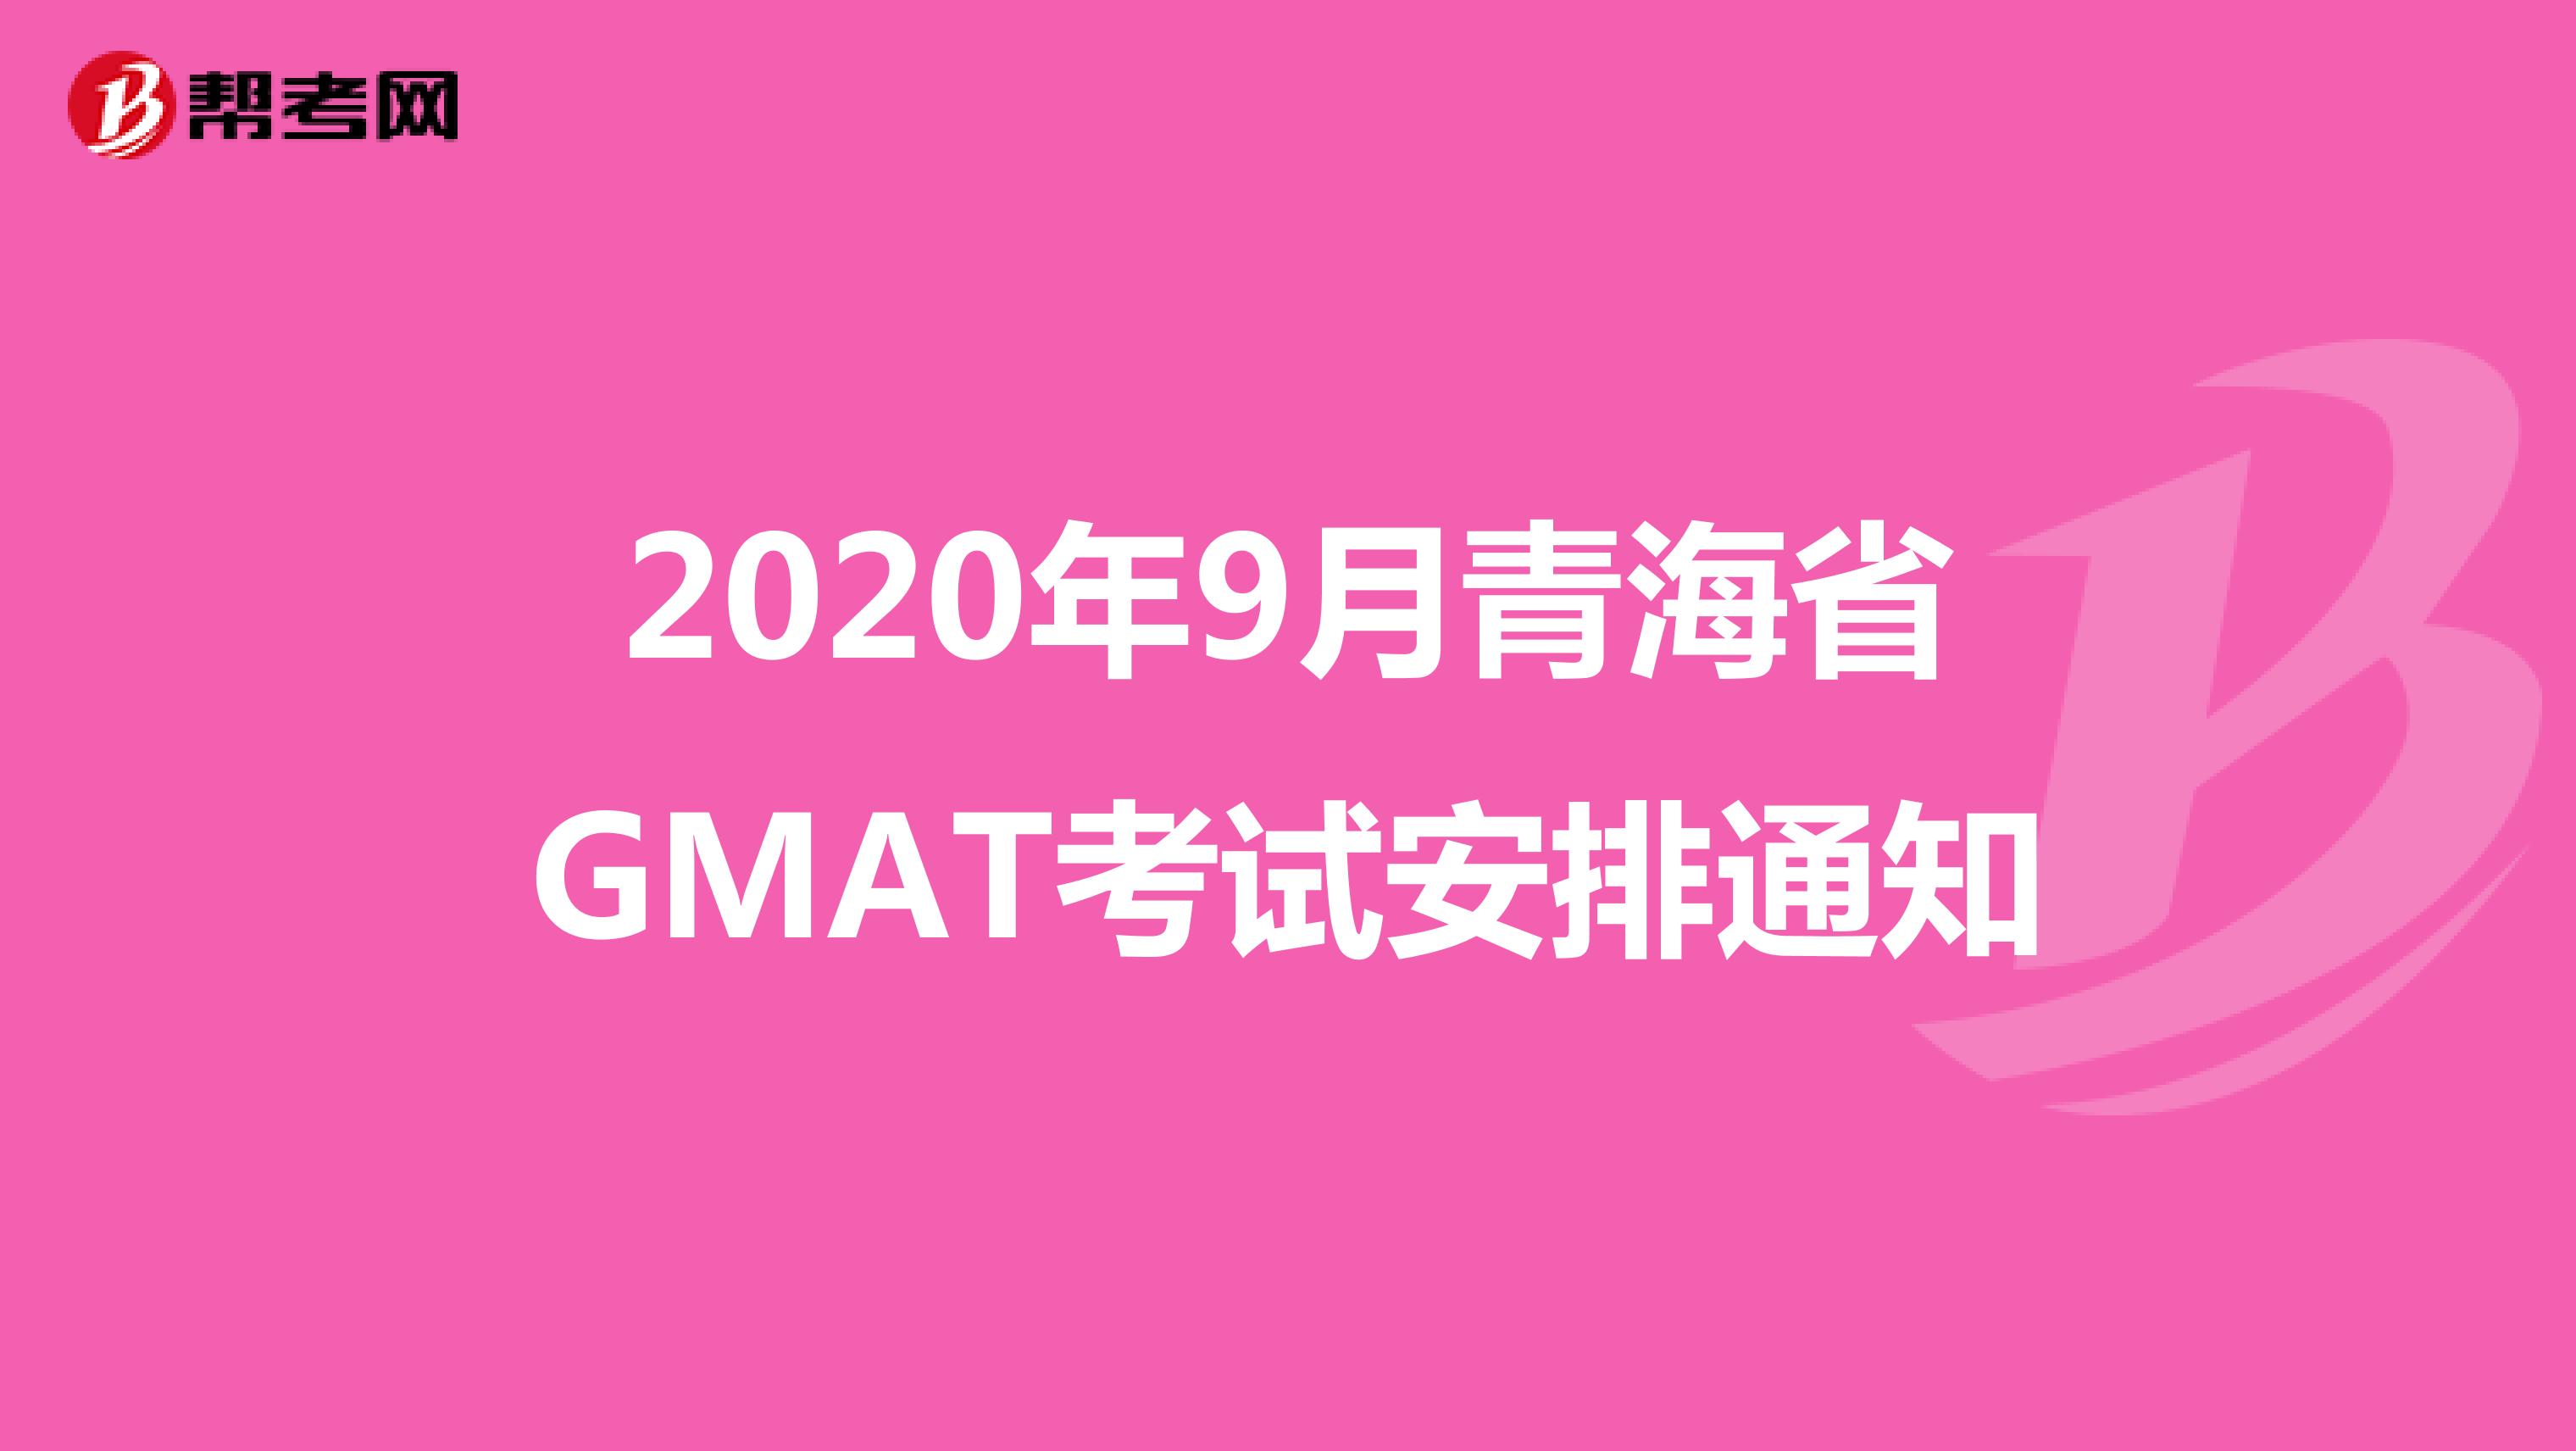 2020年9月青海省GMAT考试安排通知